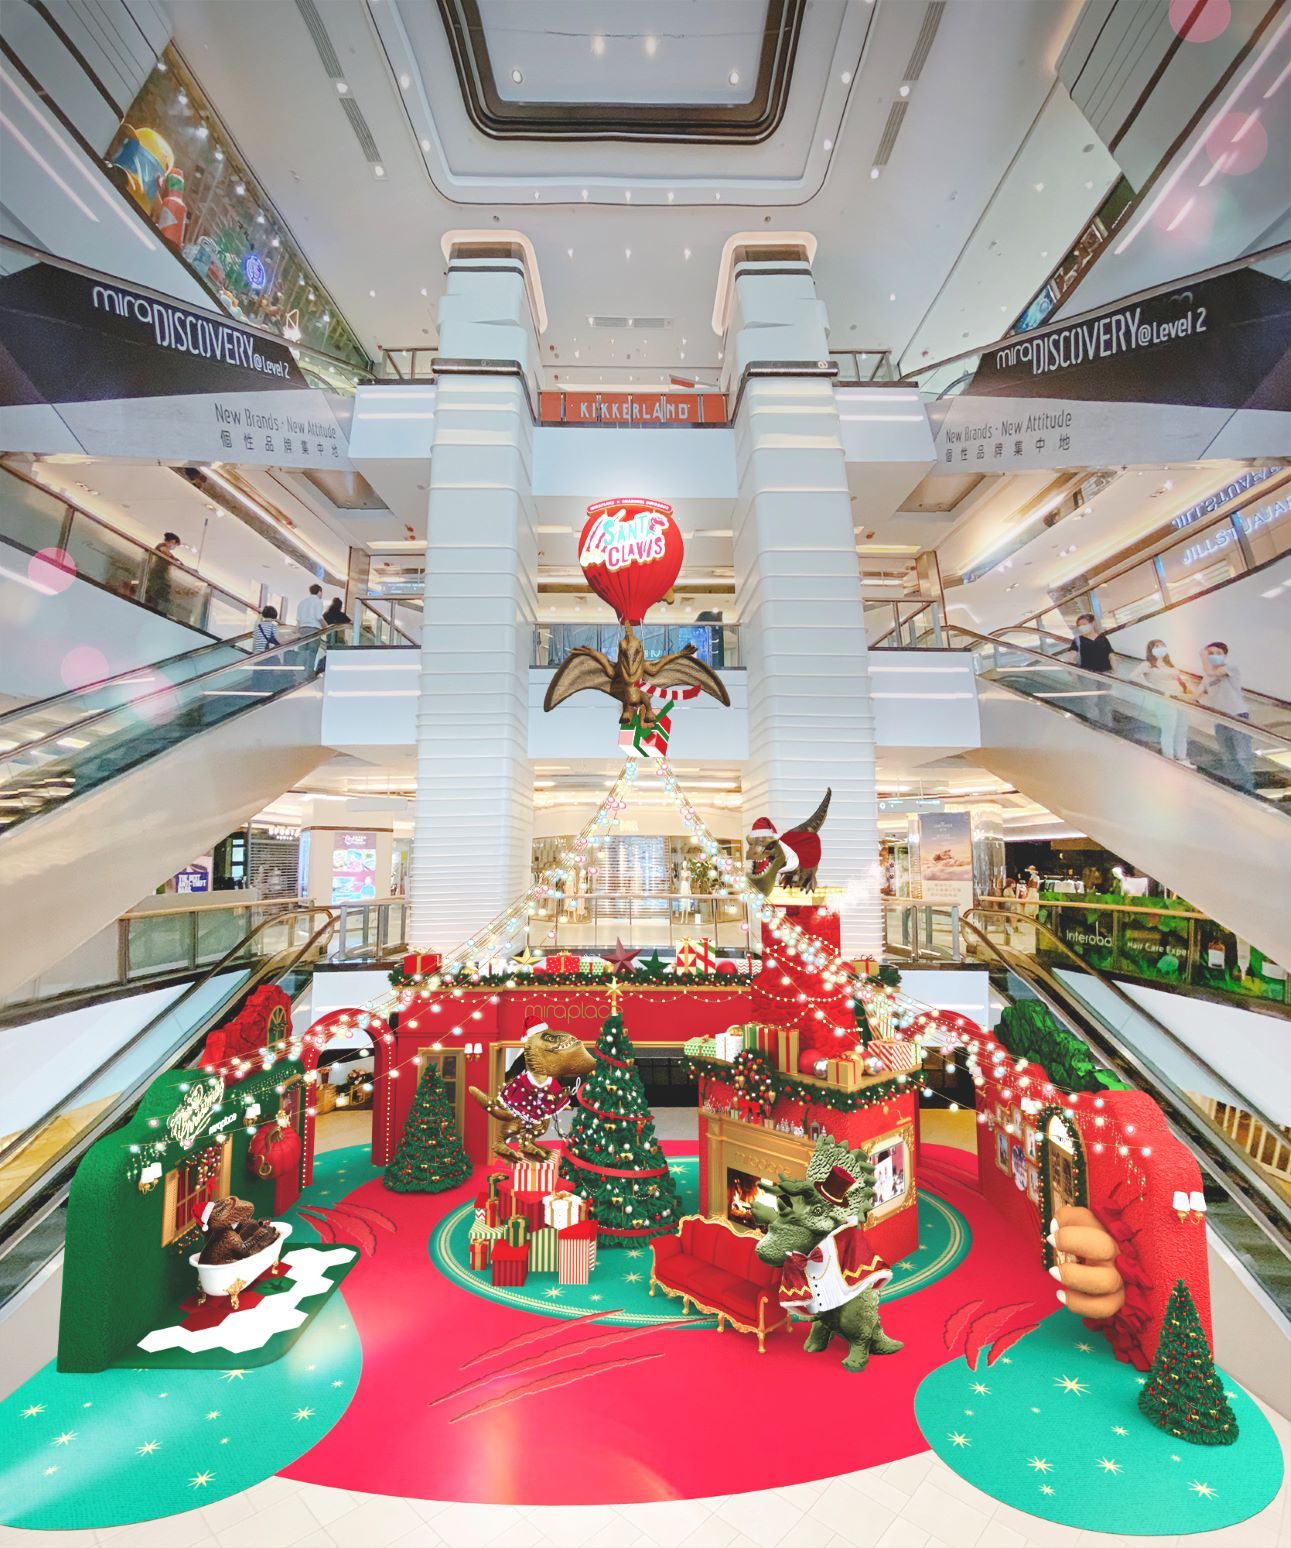 聖誕燈飾 聖誕燈飾 香港 香港聖誕燈飾 聖誕好去處 聖誕活動
「戽斗恐龍」首次登陸 Mira Place 